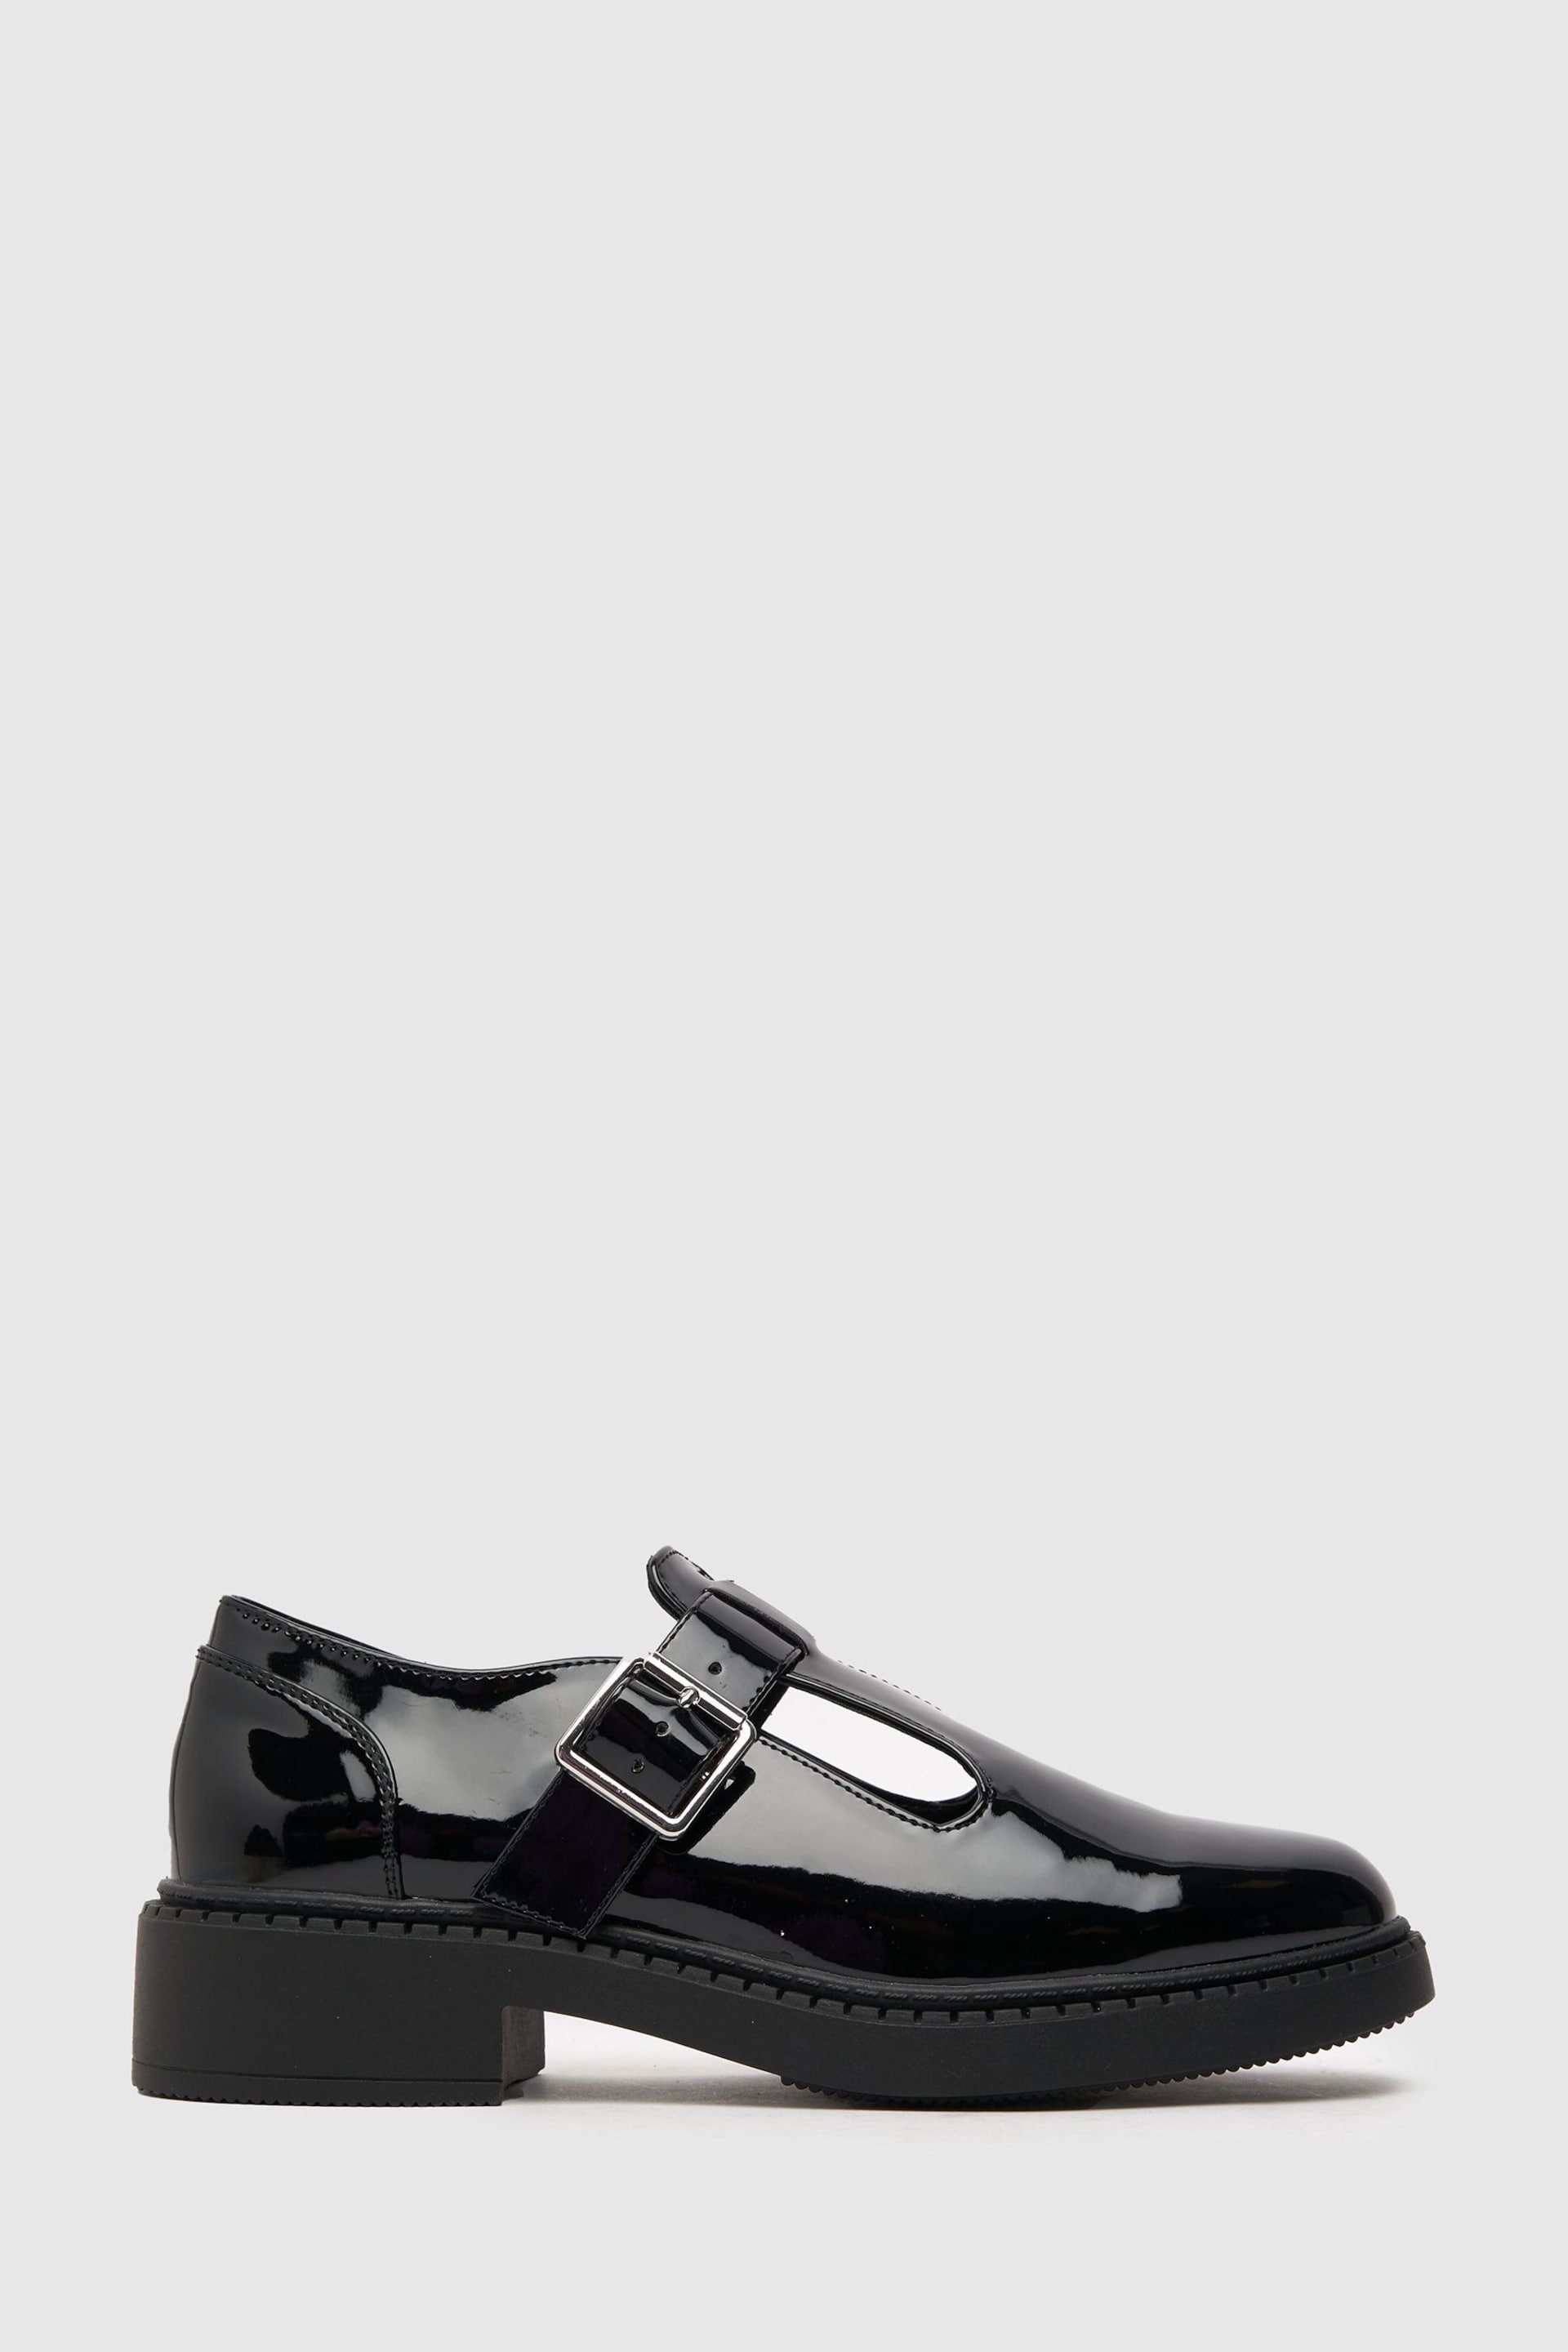 Schuh Leah Patent Black T-Bar Shoes - Image 1 of 4